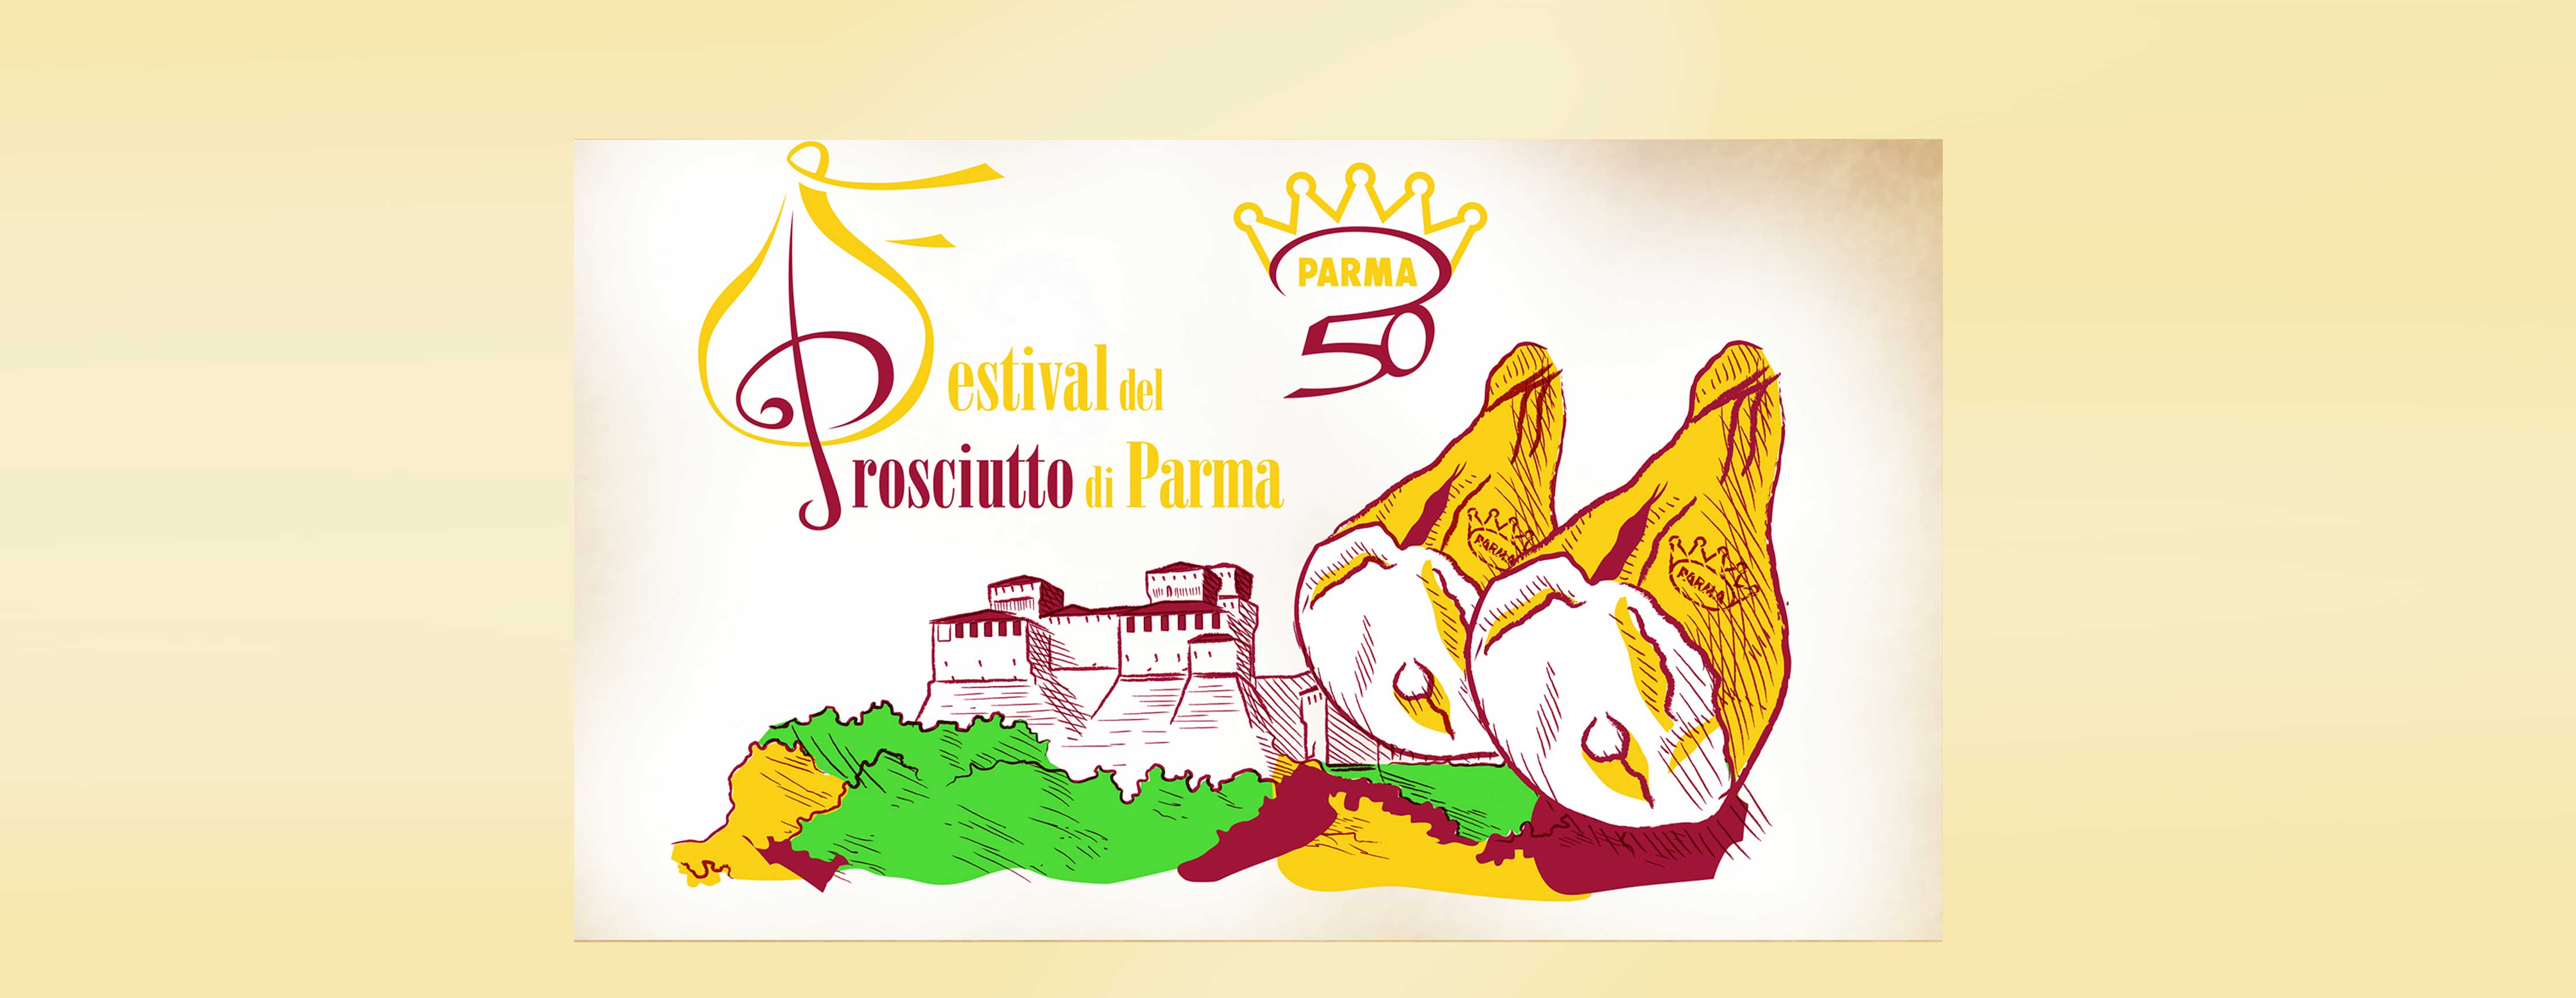 Branding_Festival_Prosciutto